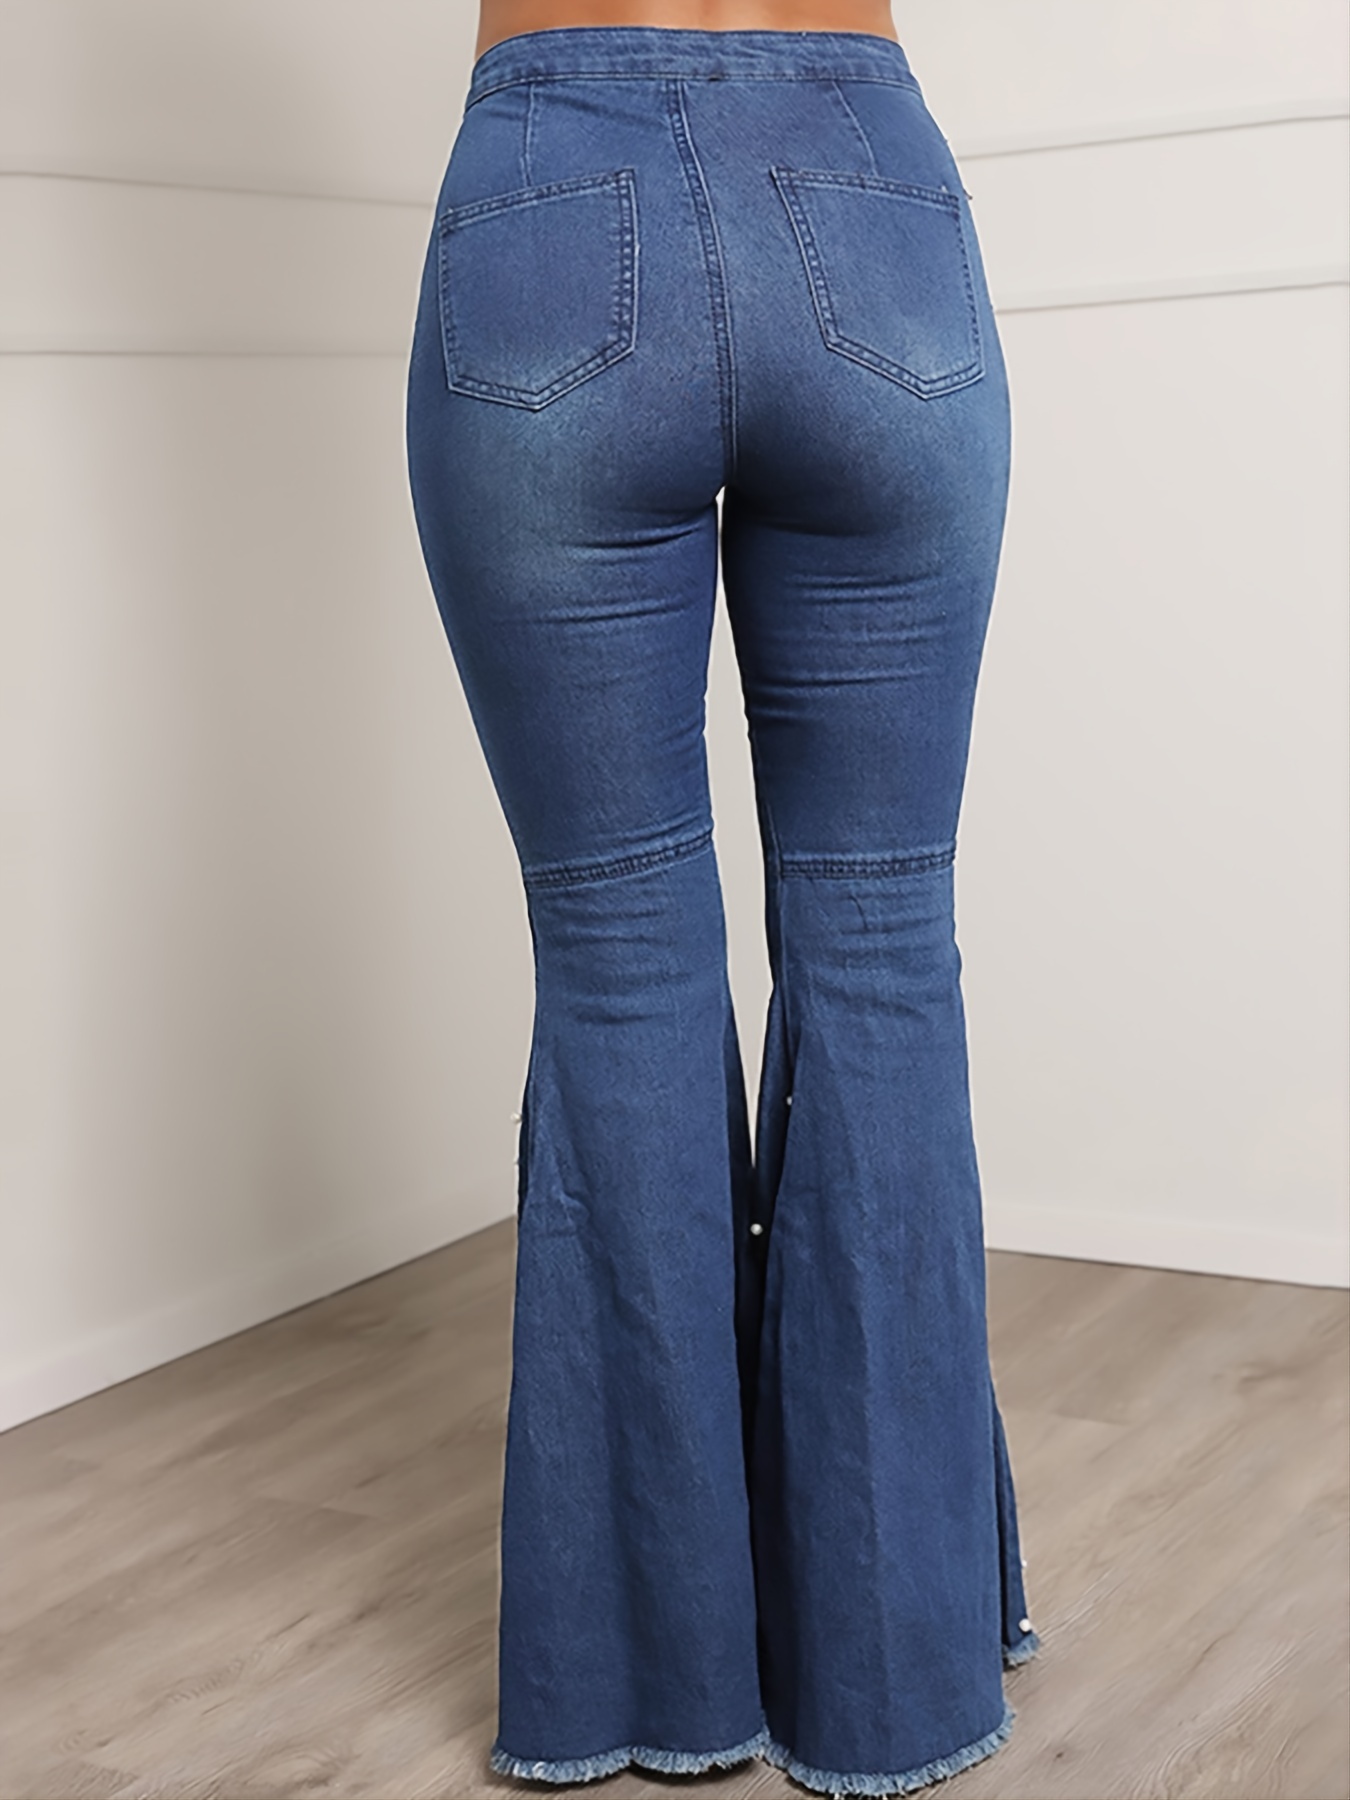 Jeans acampanados con dobladillo abotonado - Retro, Indie and Unique Fashion